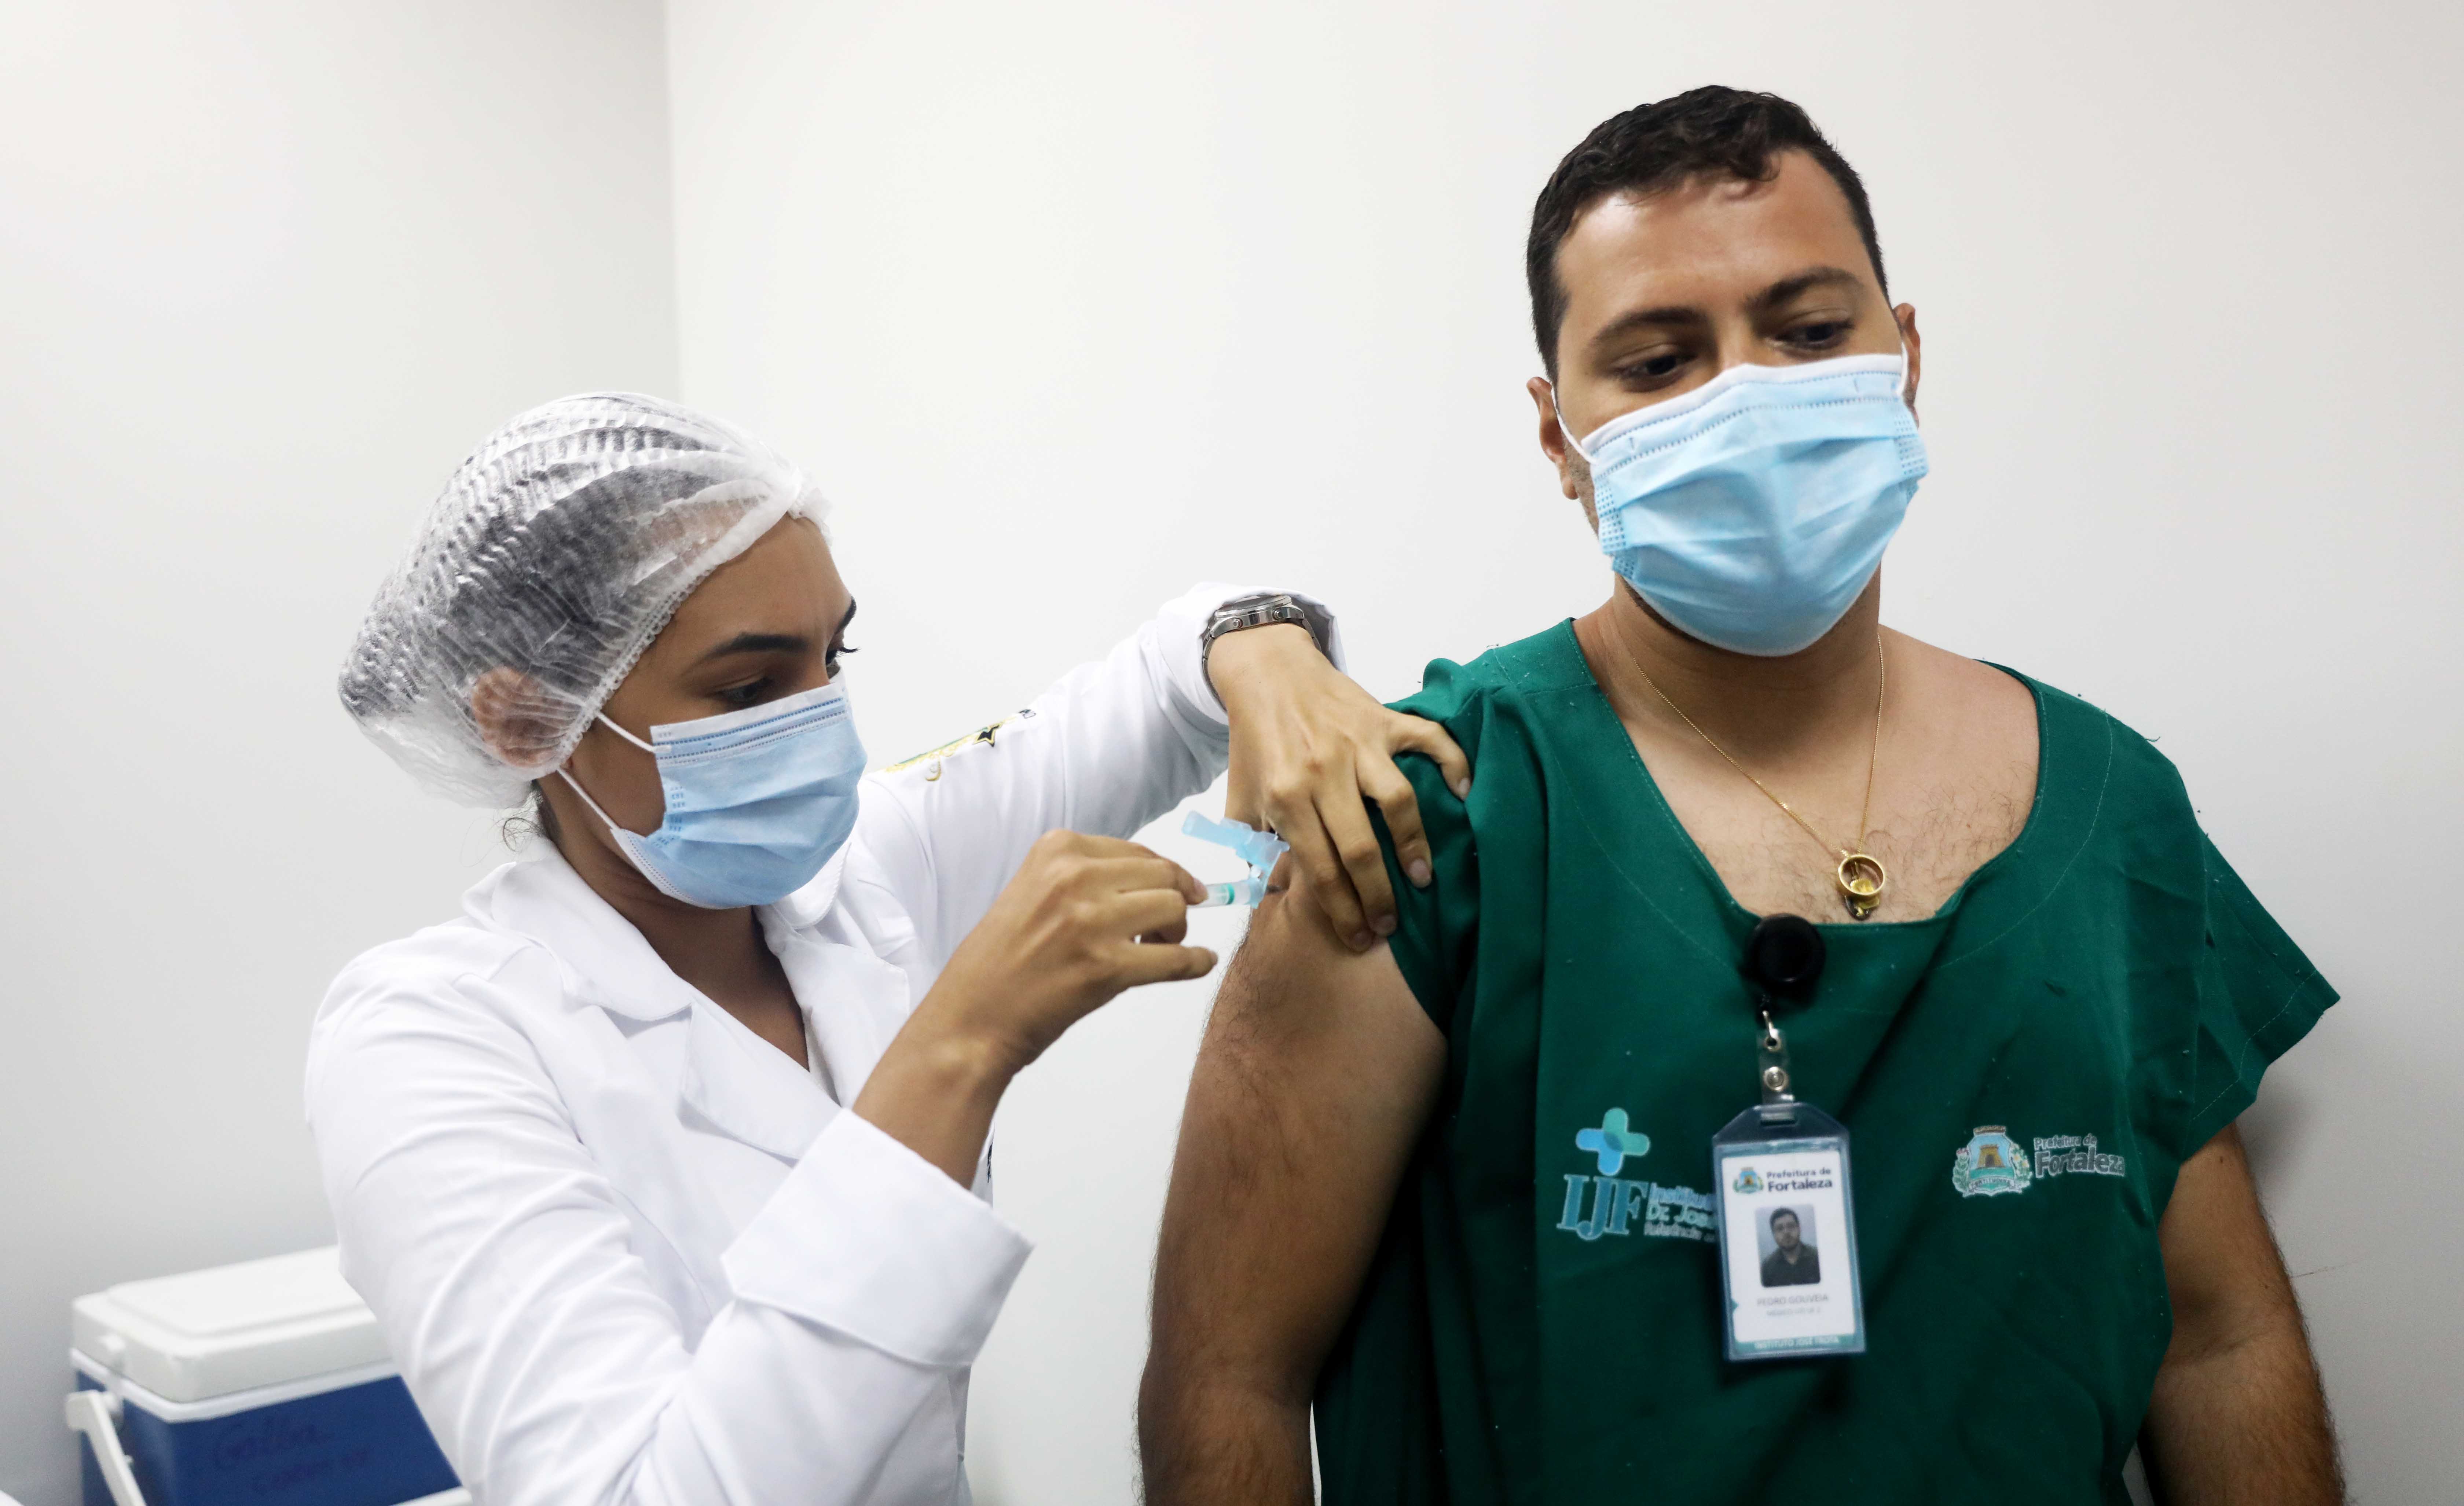 enfermeira usando máscara e touca aplicando vacina em homem funcionário do IJF, usando máscara, bata e crachá da Prefeitura